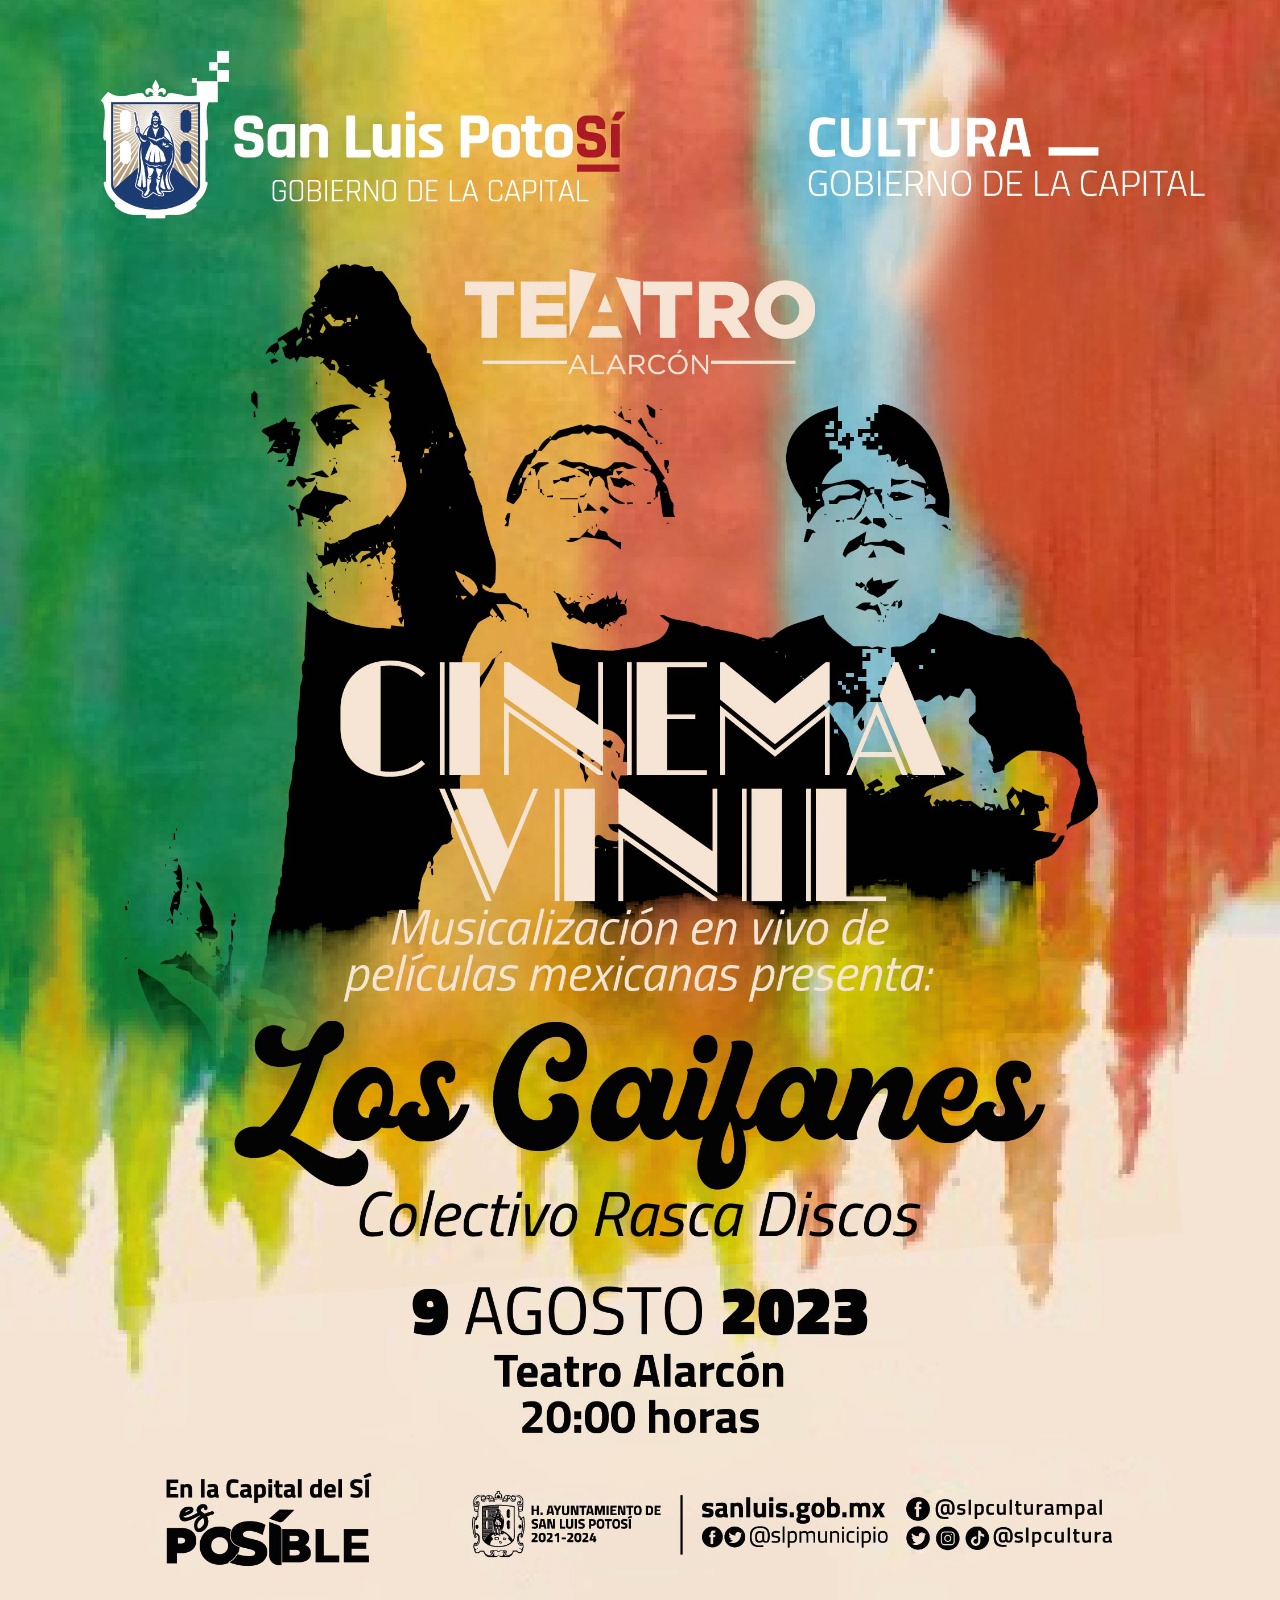 Se llevará a cabo esté miércoles 9 de agosto en el Teatro Alarcón. Se musicalizará la icónica película mexicana: “Los Caifanes”.